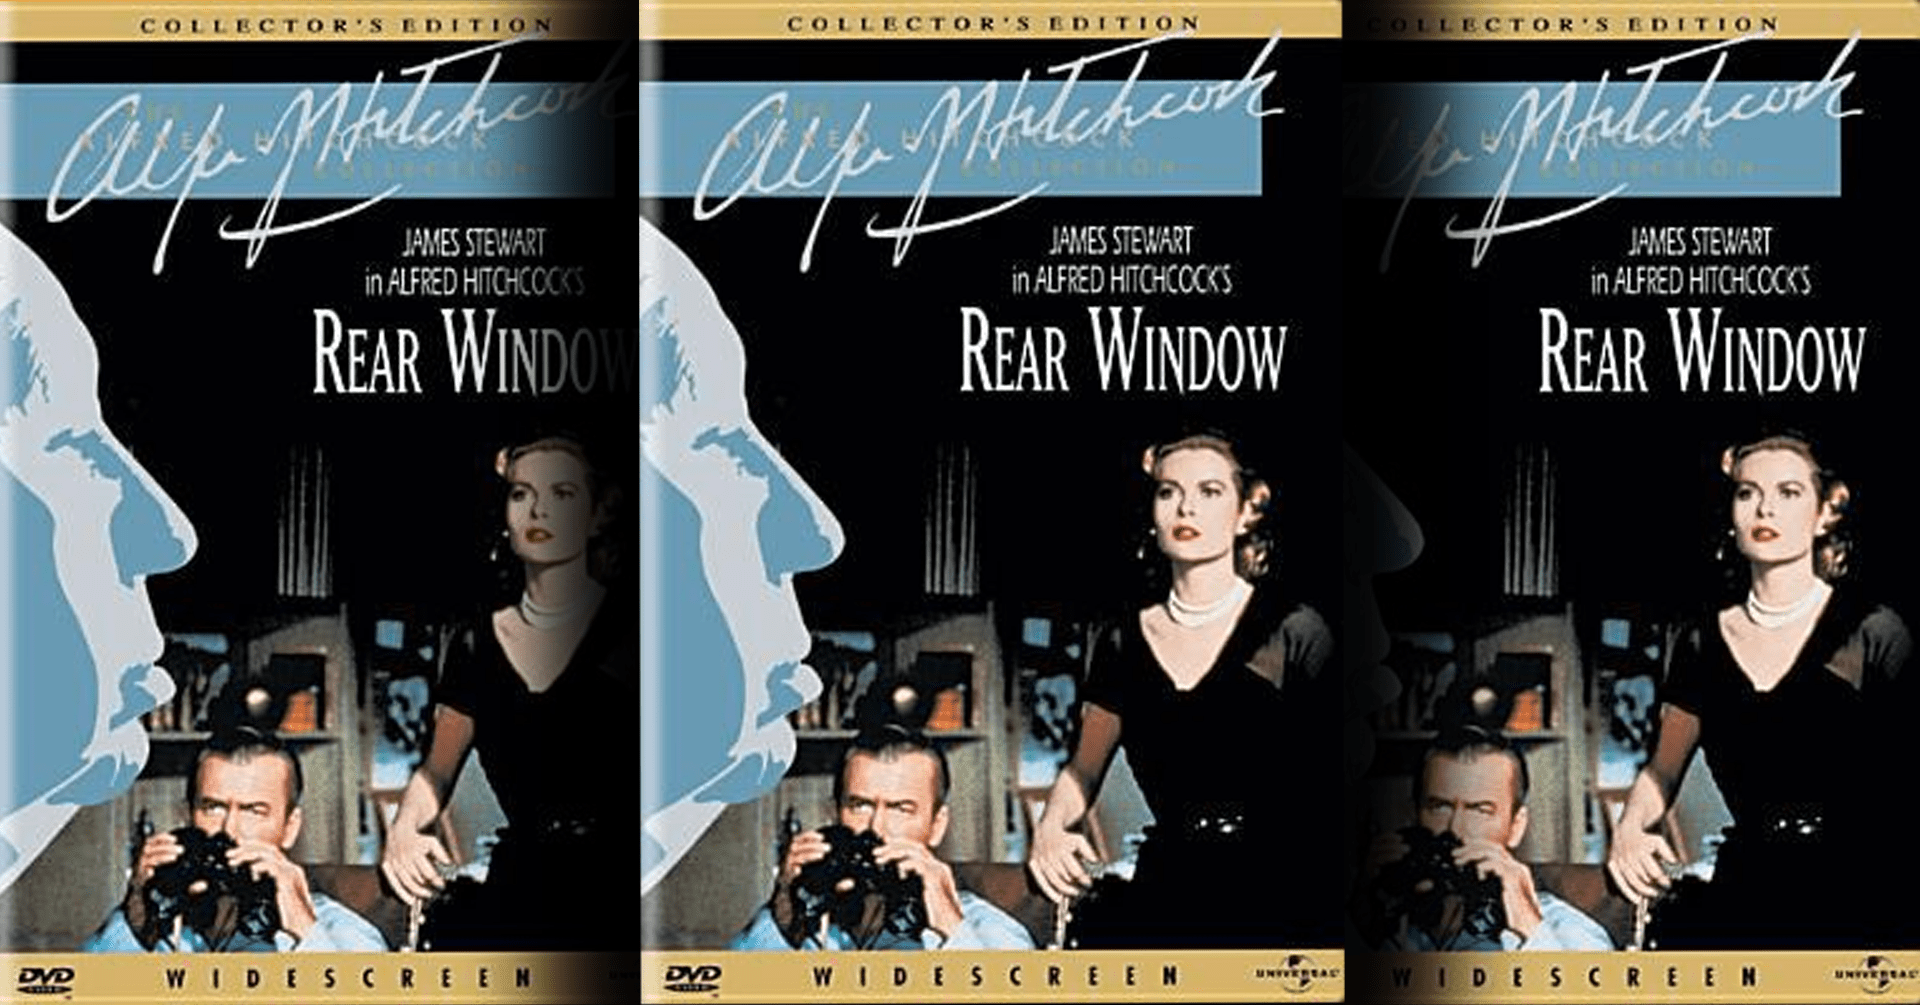 Rear Window DVD cover